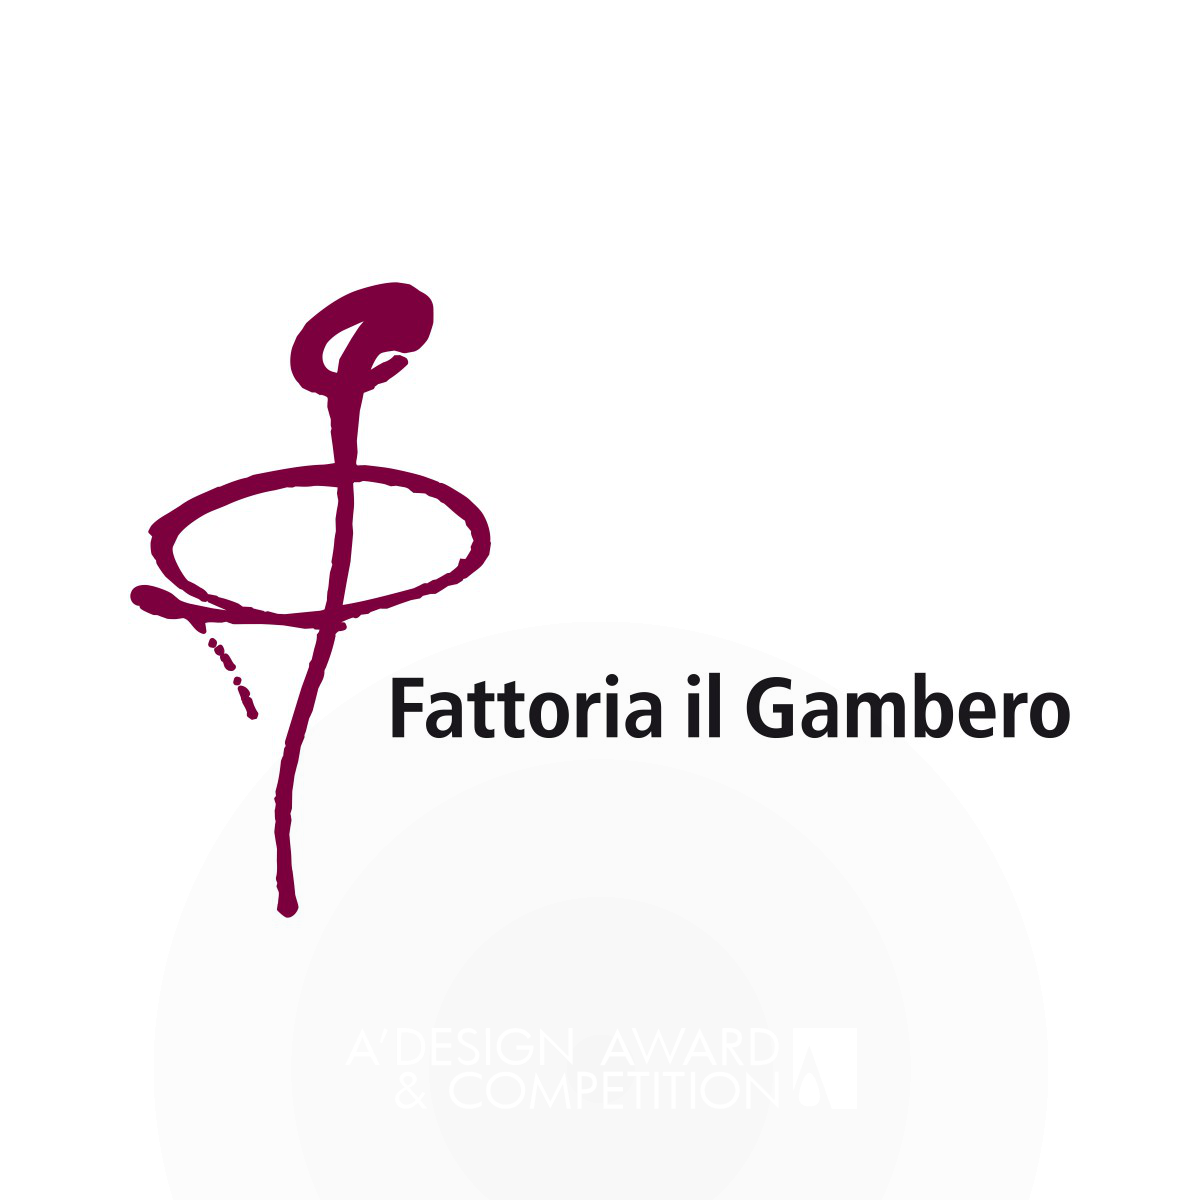 Fattoria il Gambero Visual Identity by Laura Ferrario